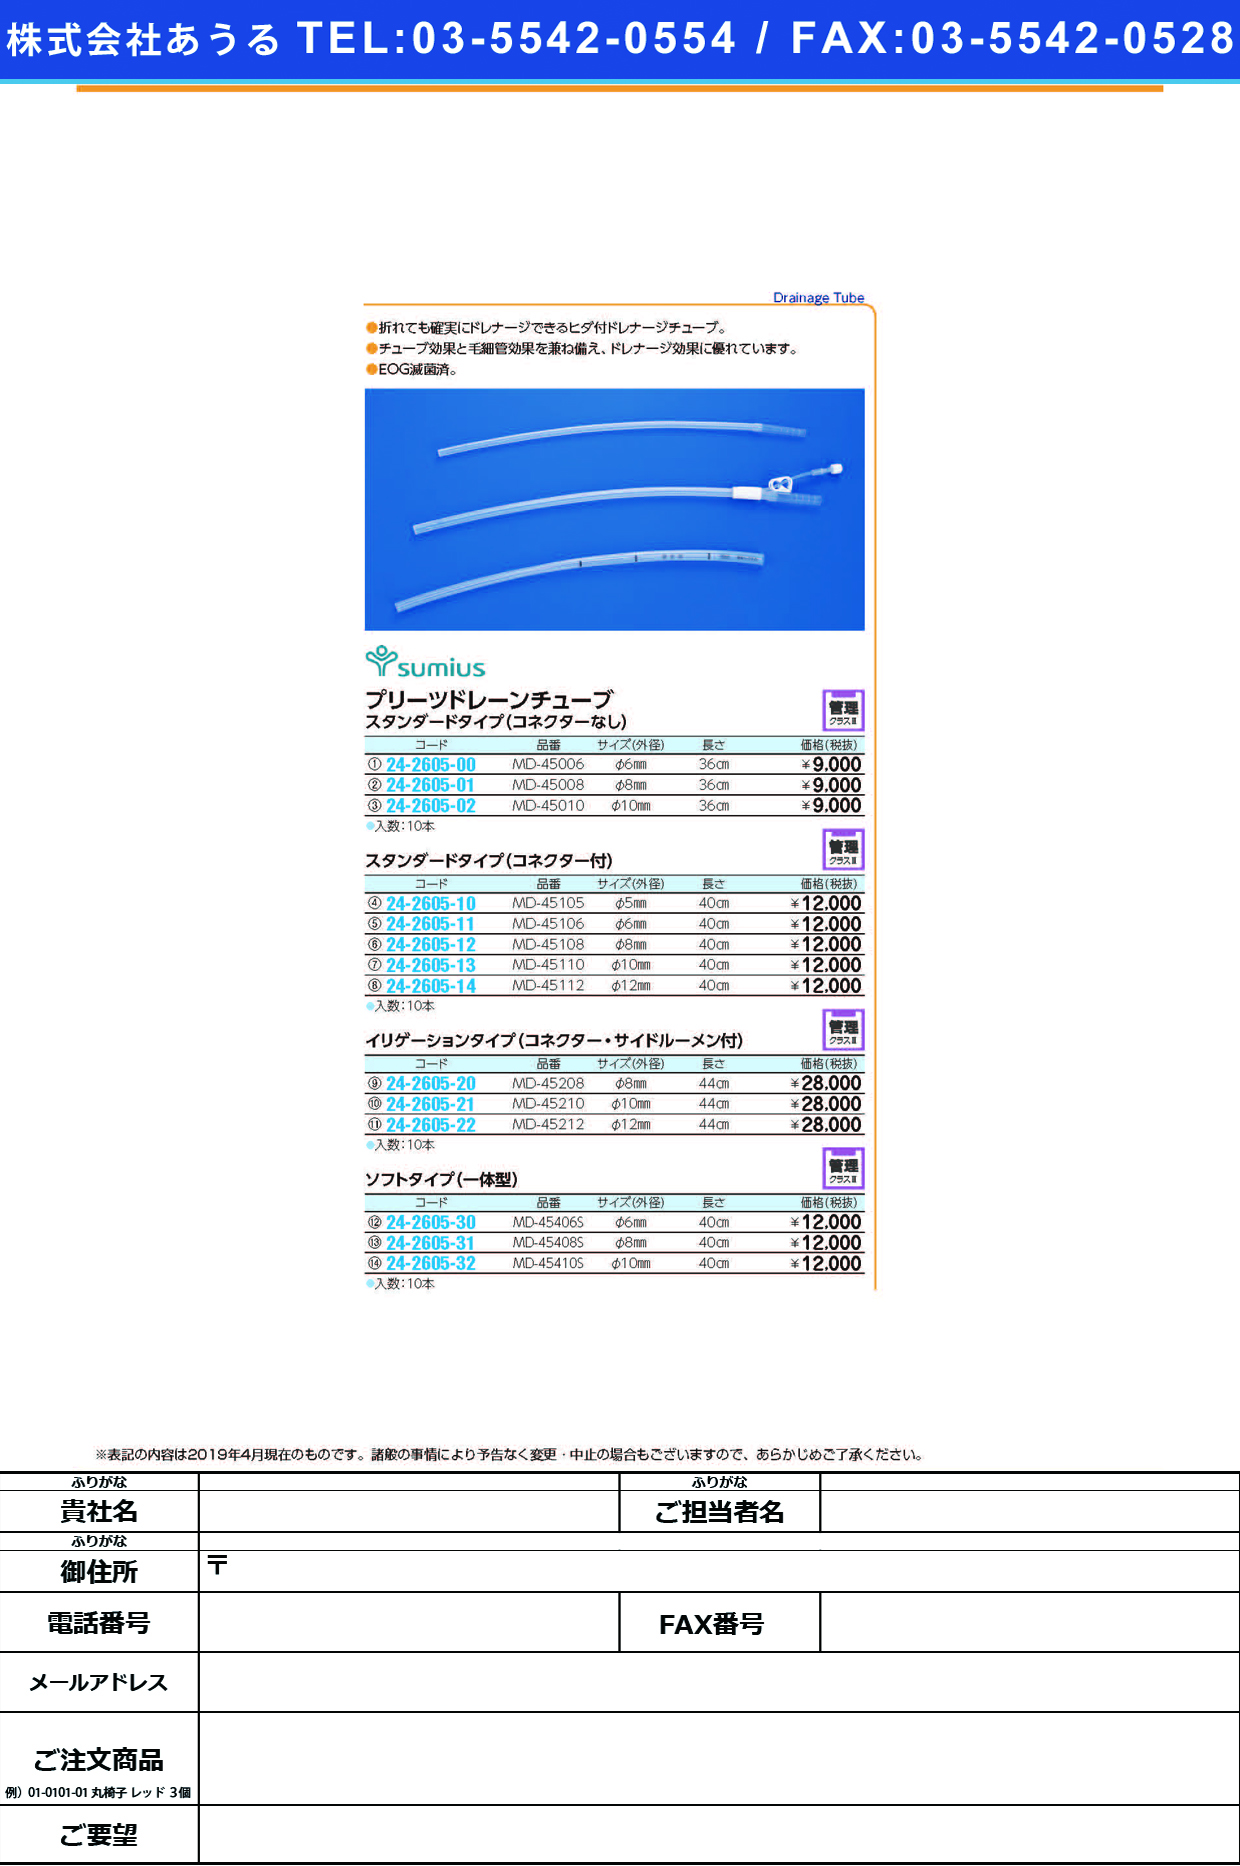 (24-2605-32)プリーツドレーンチューブソフトタイプ MD-45410S(10MM)10ｲﾘ ﾌﾟﾘｰﾂﾄﾞﾚｰﾝﾁｭｰﾌﾞ(住友ベークライト)【1箱単位】【2019年カタログ商品】